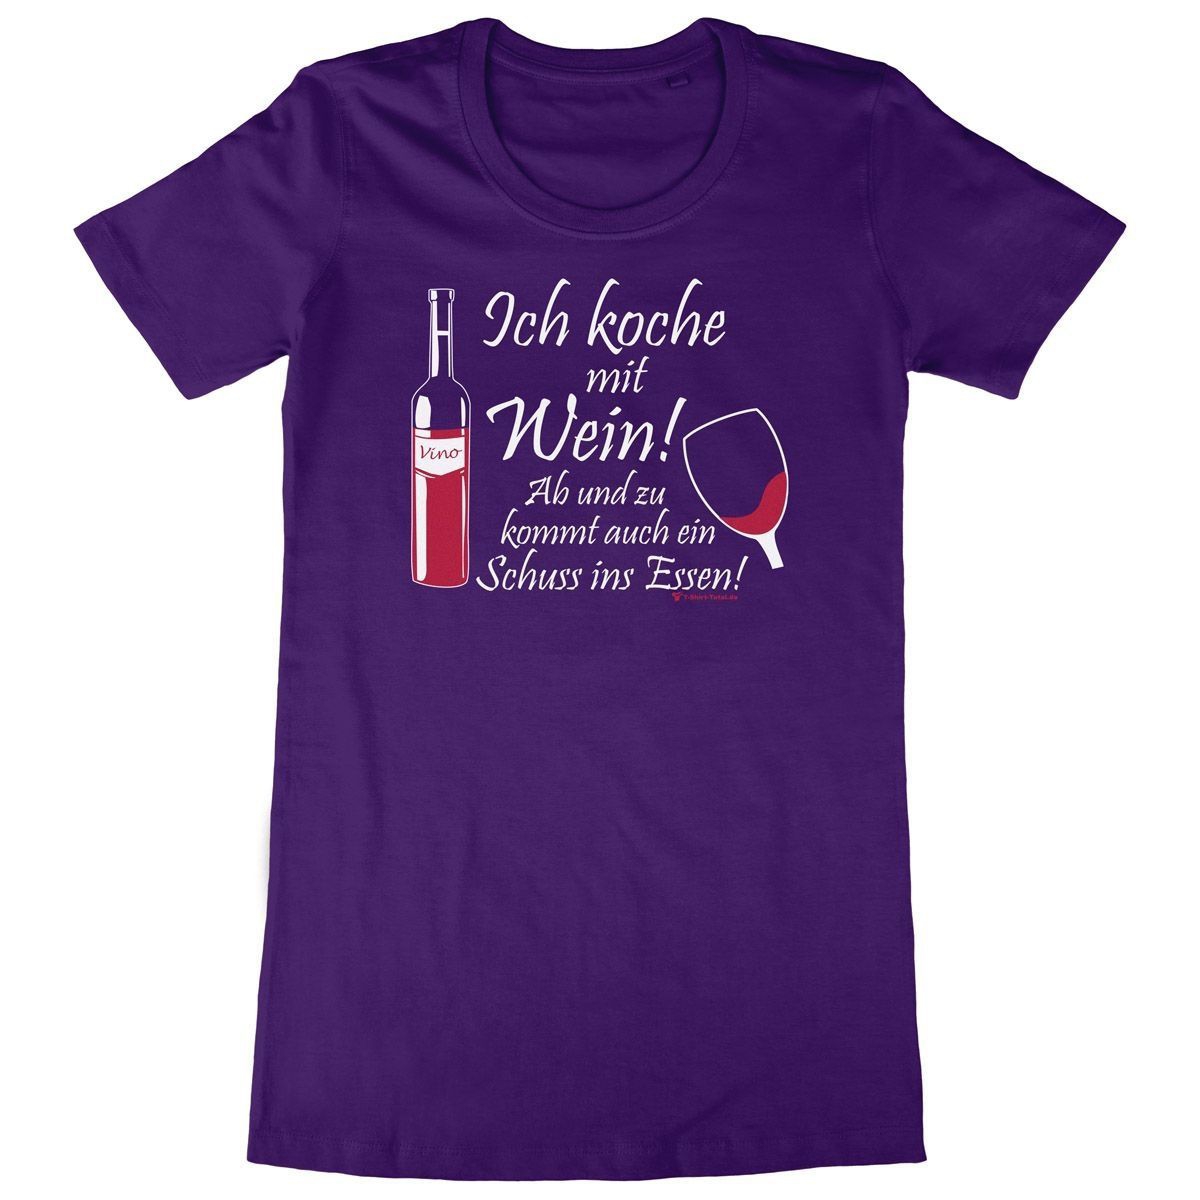 Koche mit Wein Woman Long Shirt lila Large